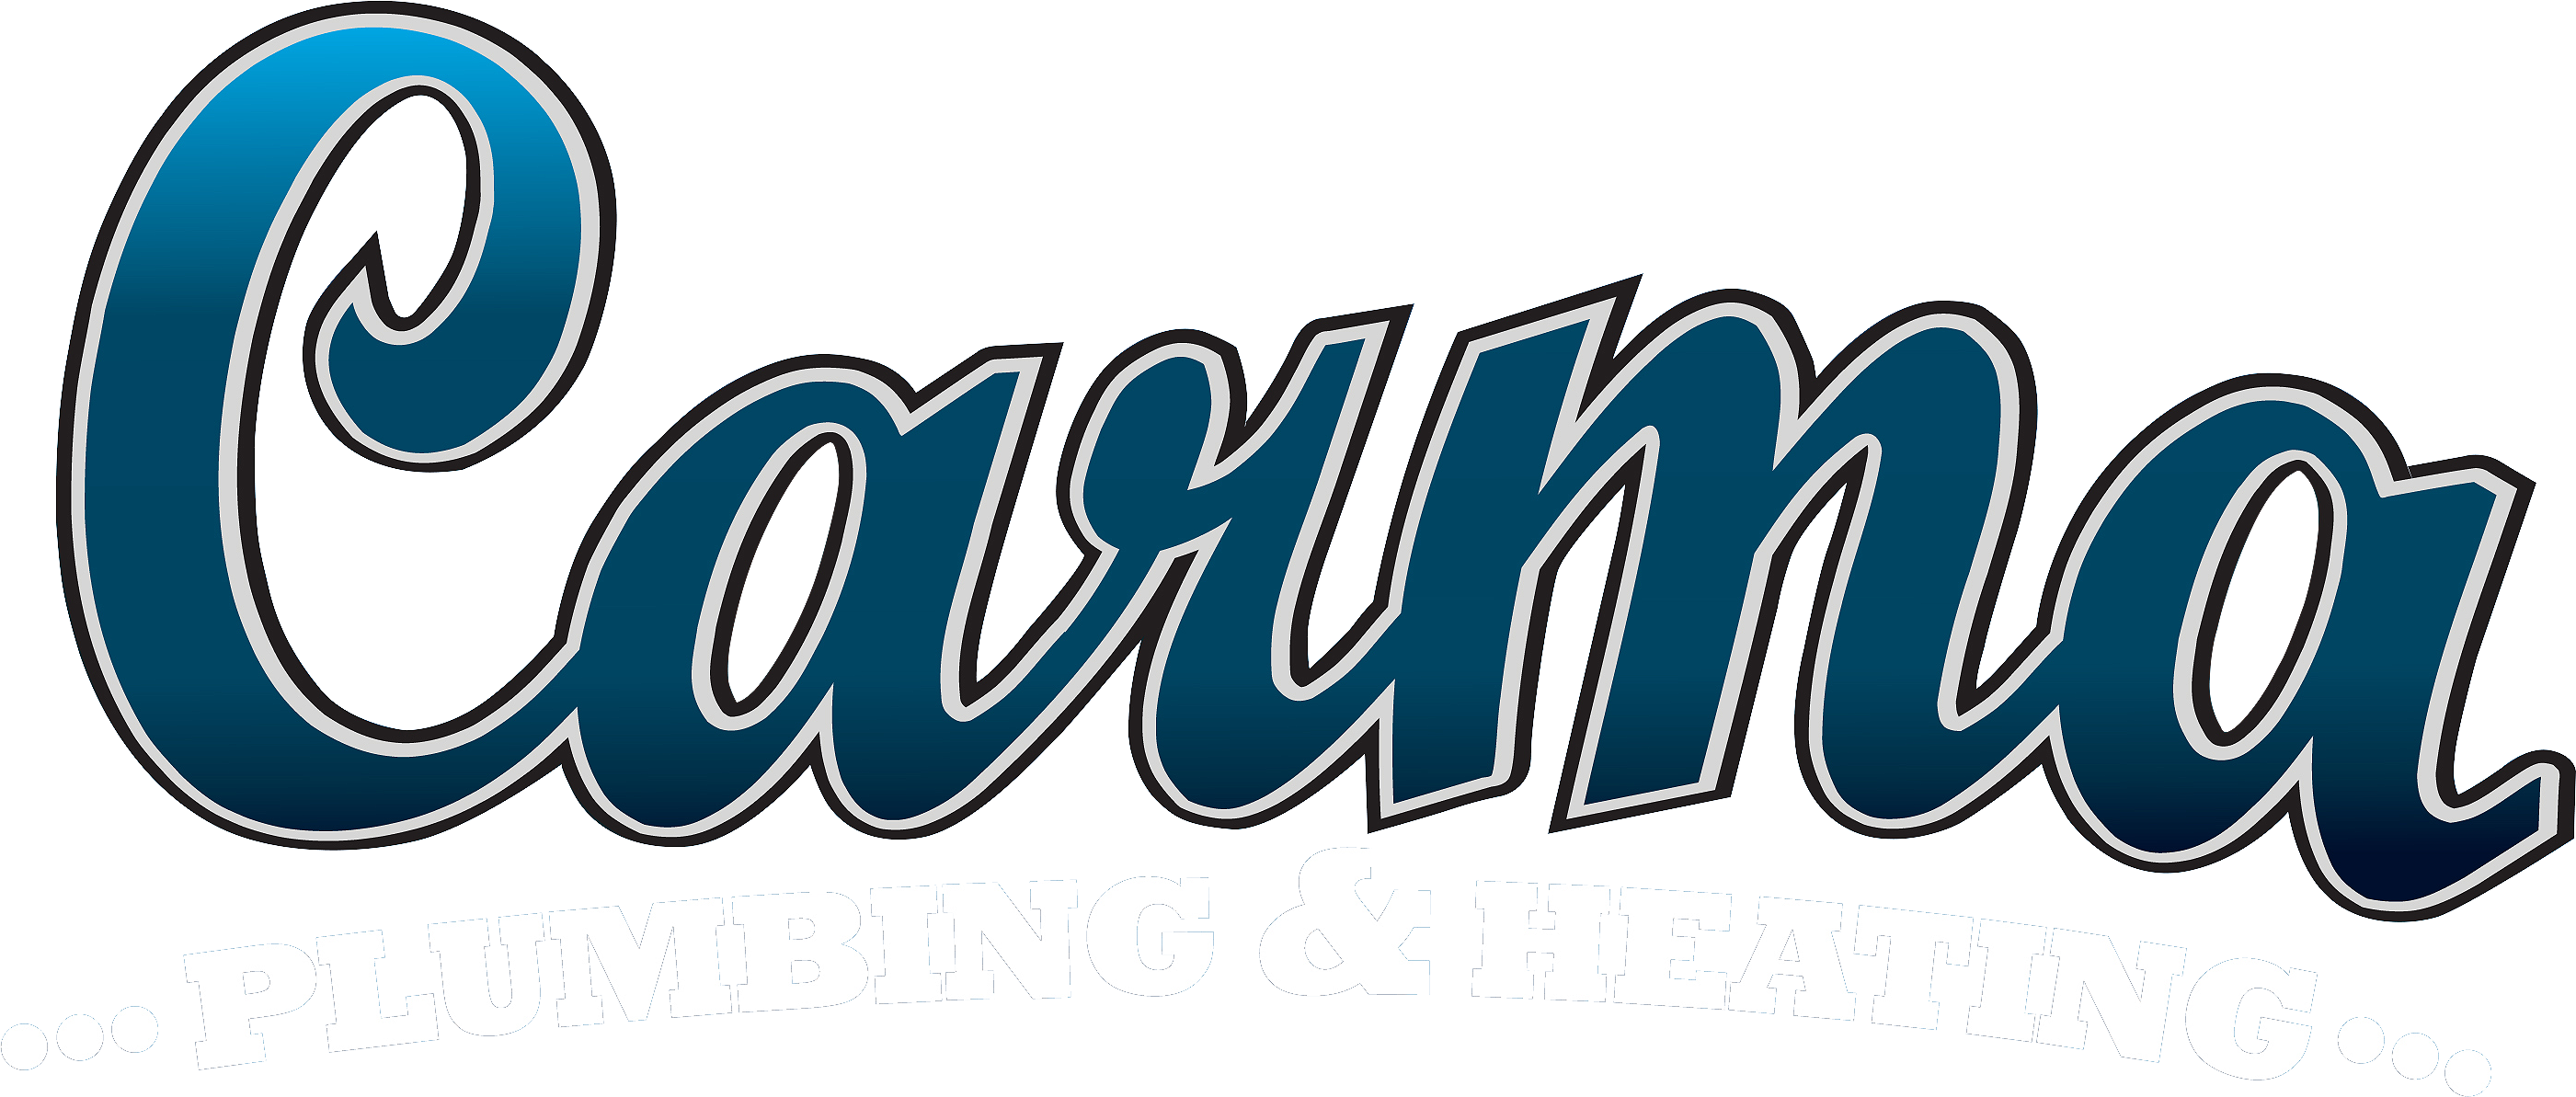 Carma Plumbing & Heating Bourne